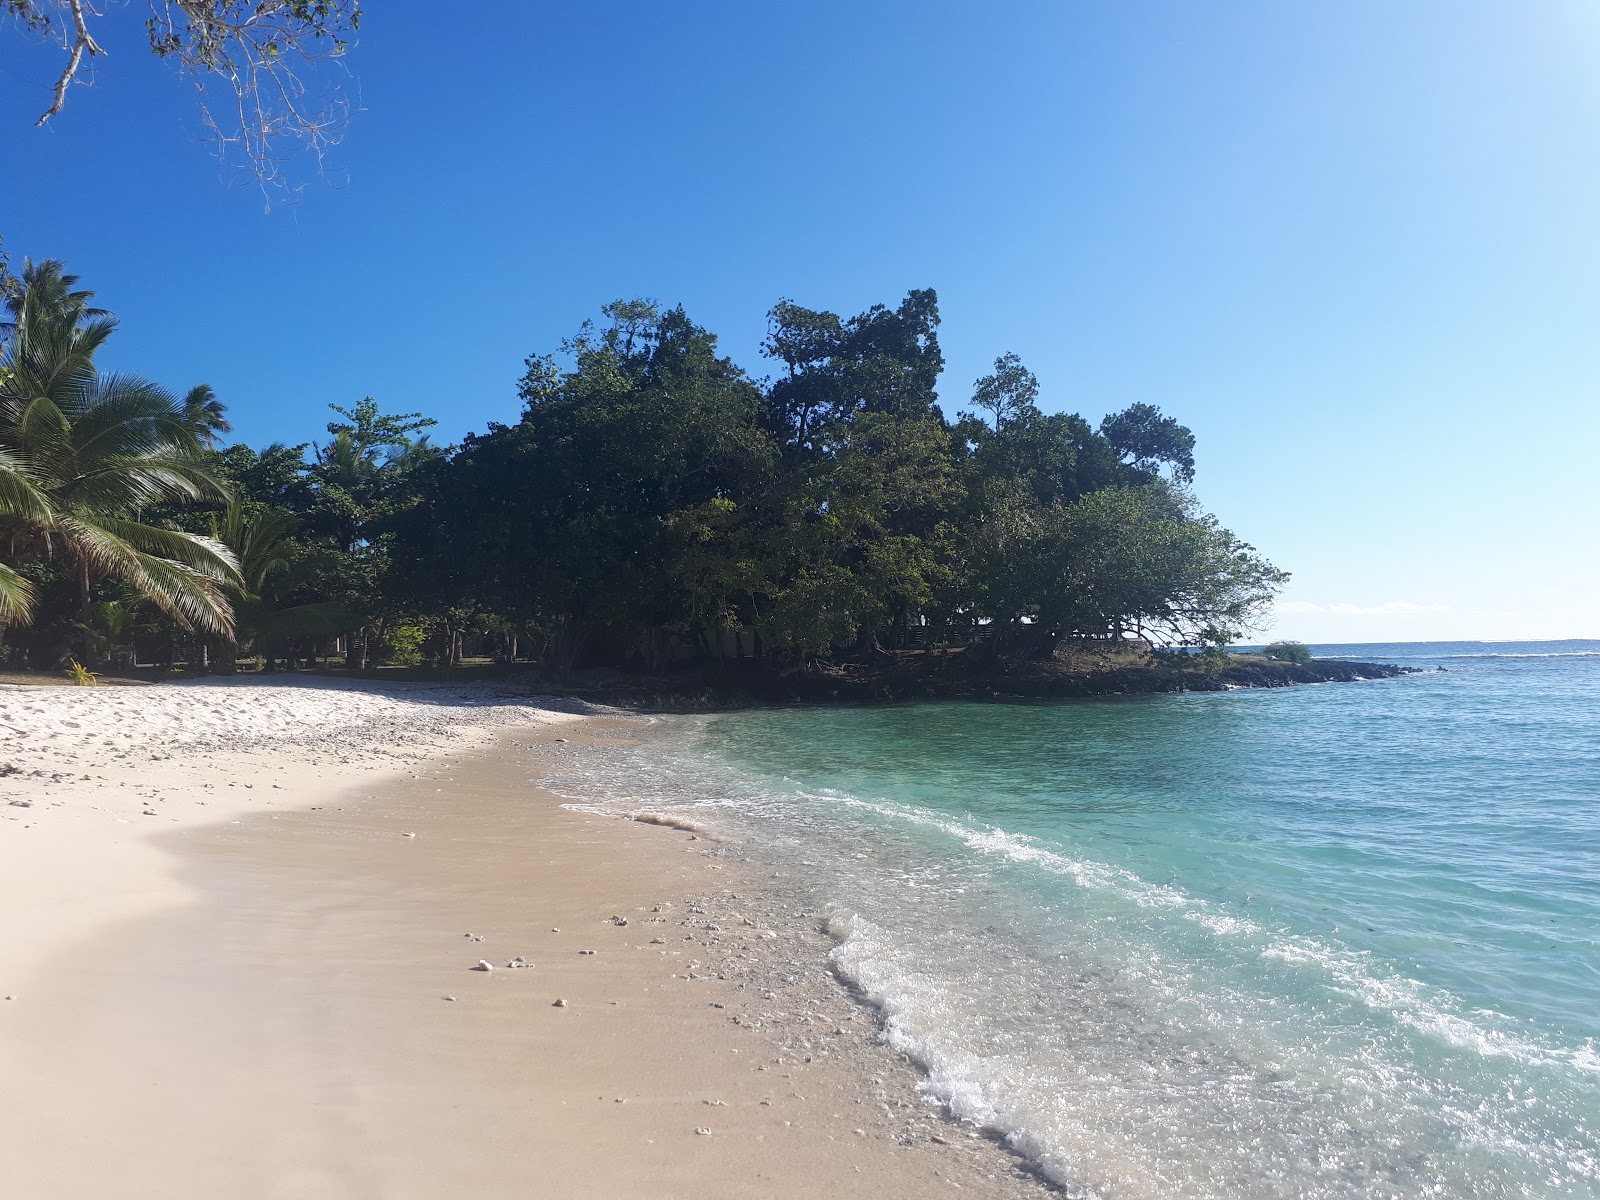 Foto af Eratap Beach - populært sted blandt afslapningskendere